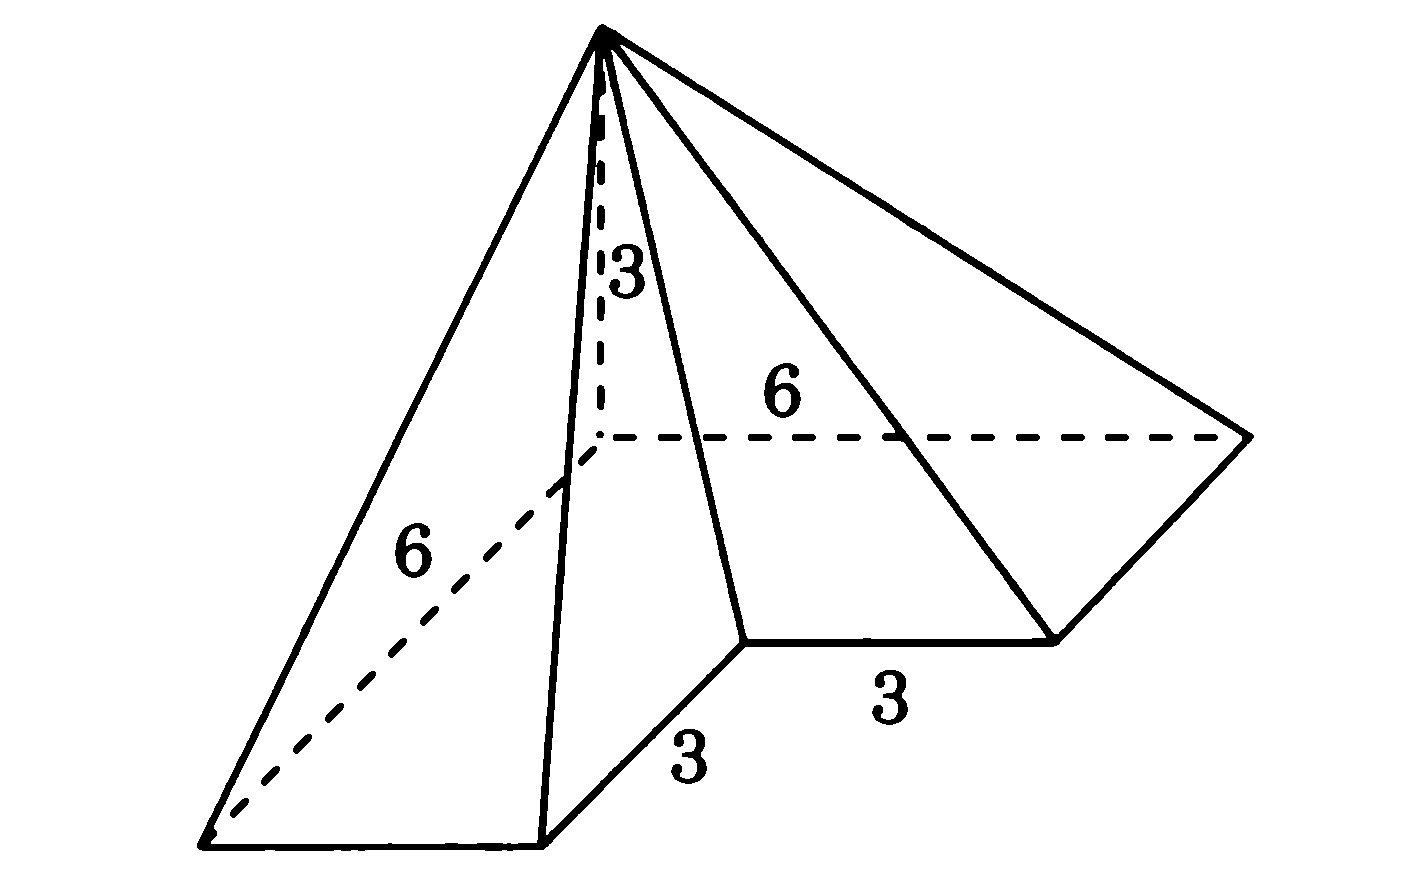 Многоугольник является основанием пирамиды изображенной на рисунке